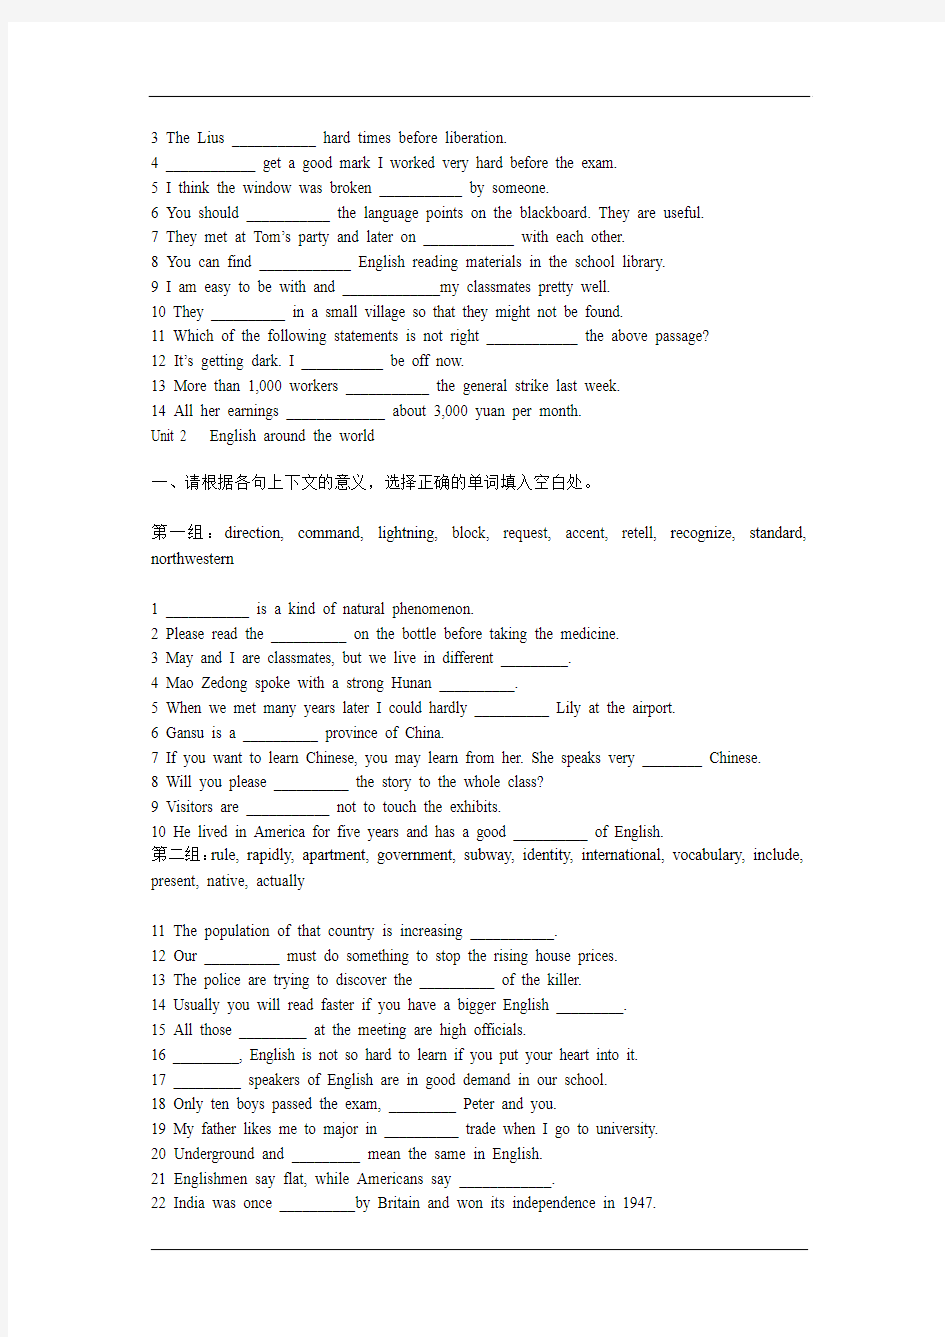 2010英语福建版40天冲刺语词汇检测练习